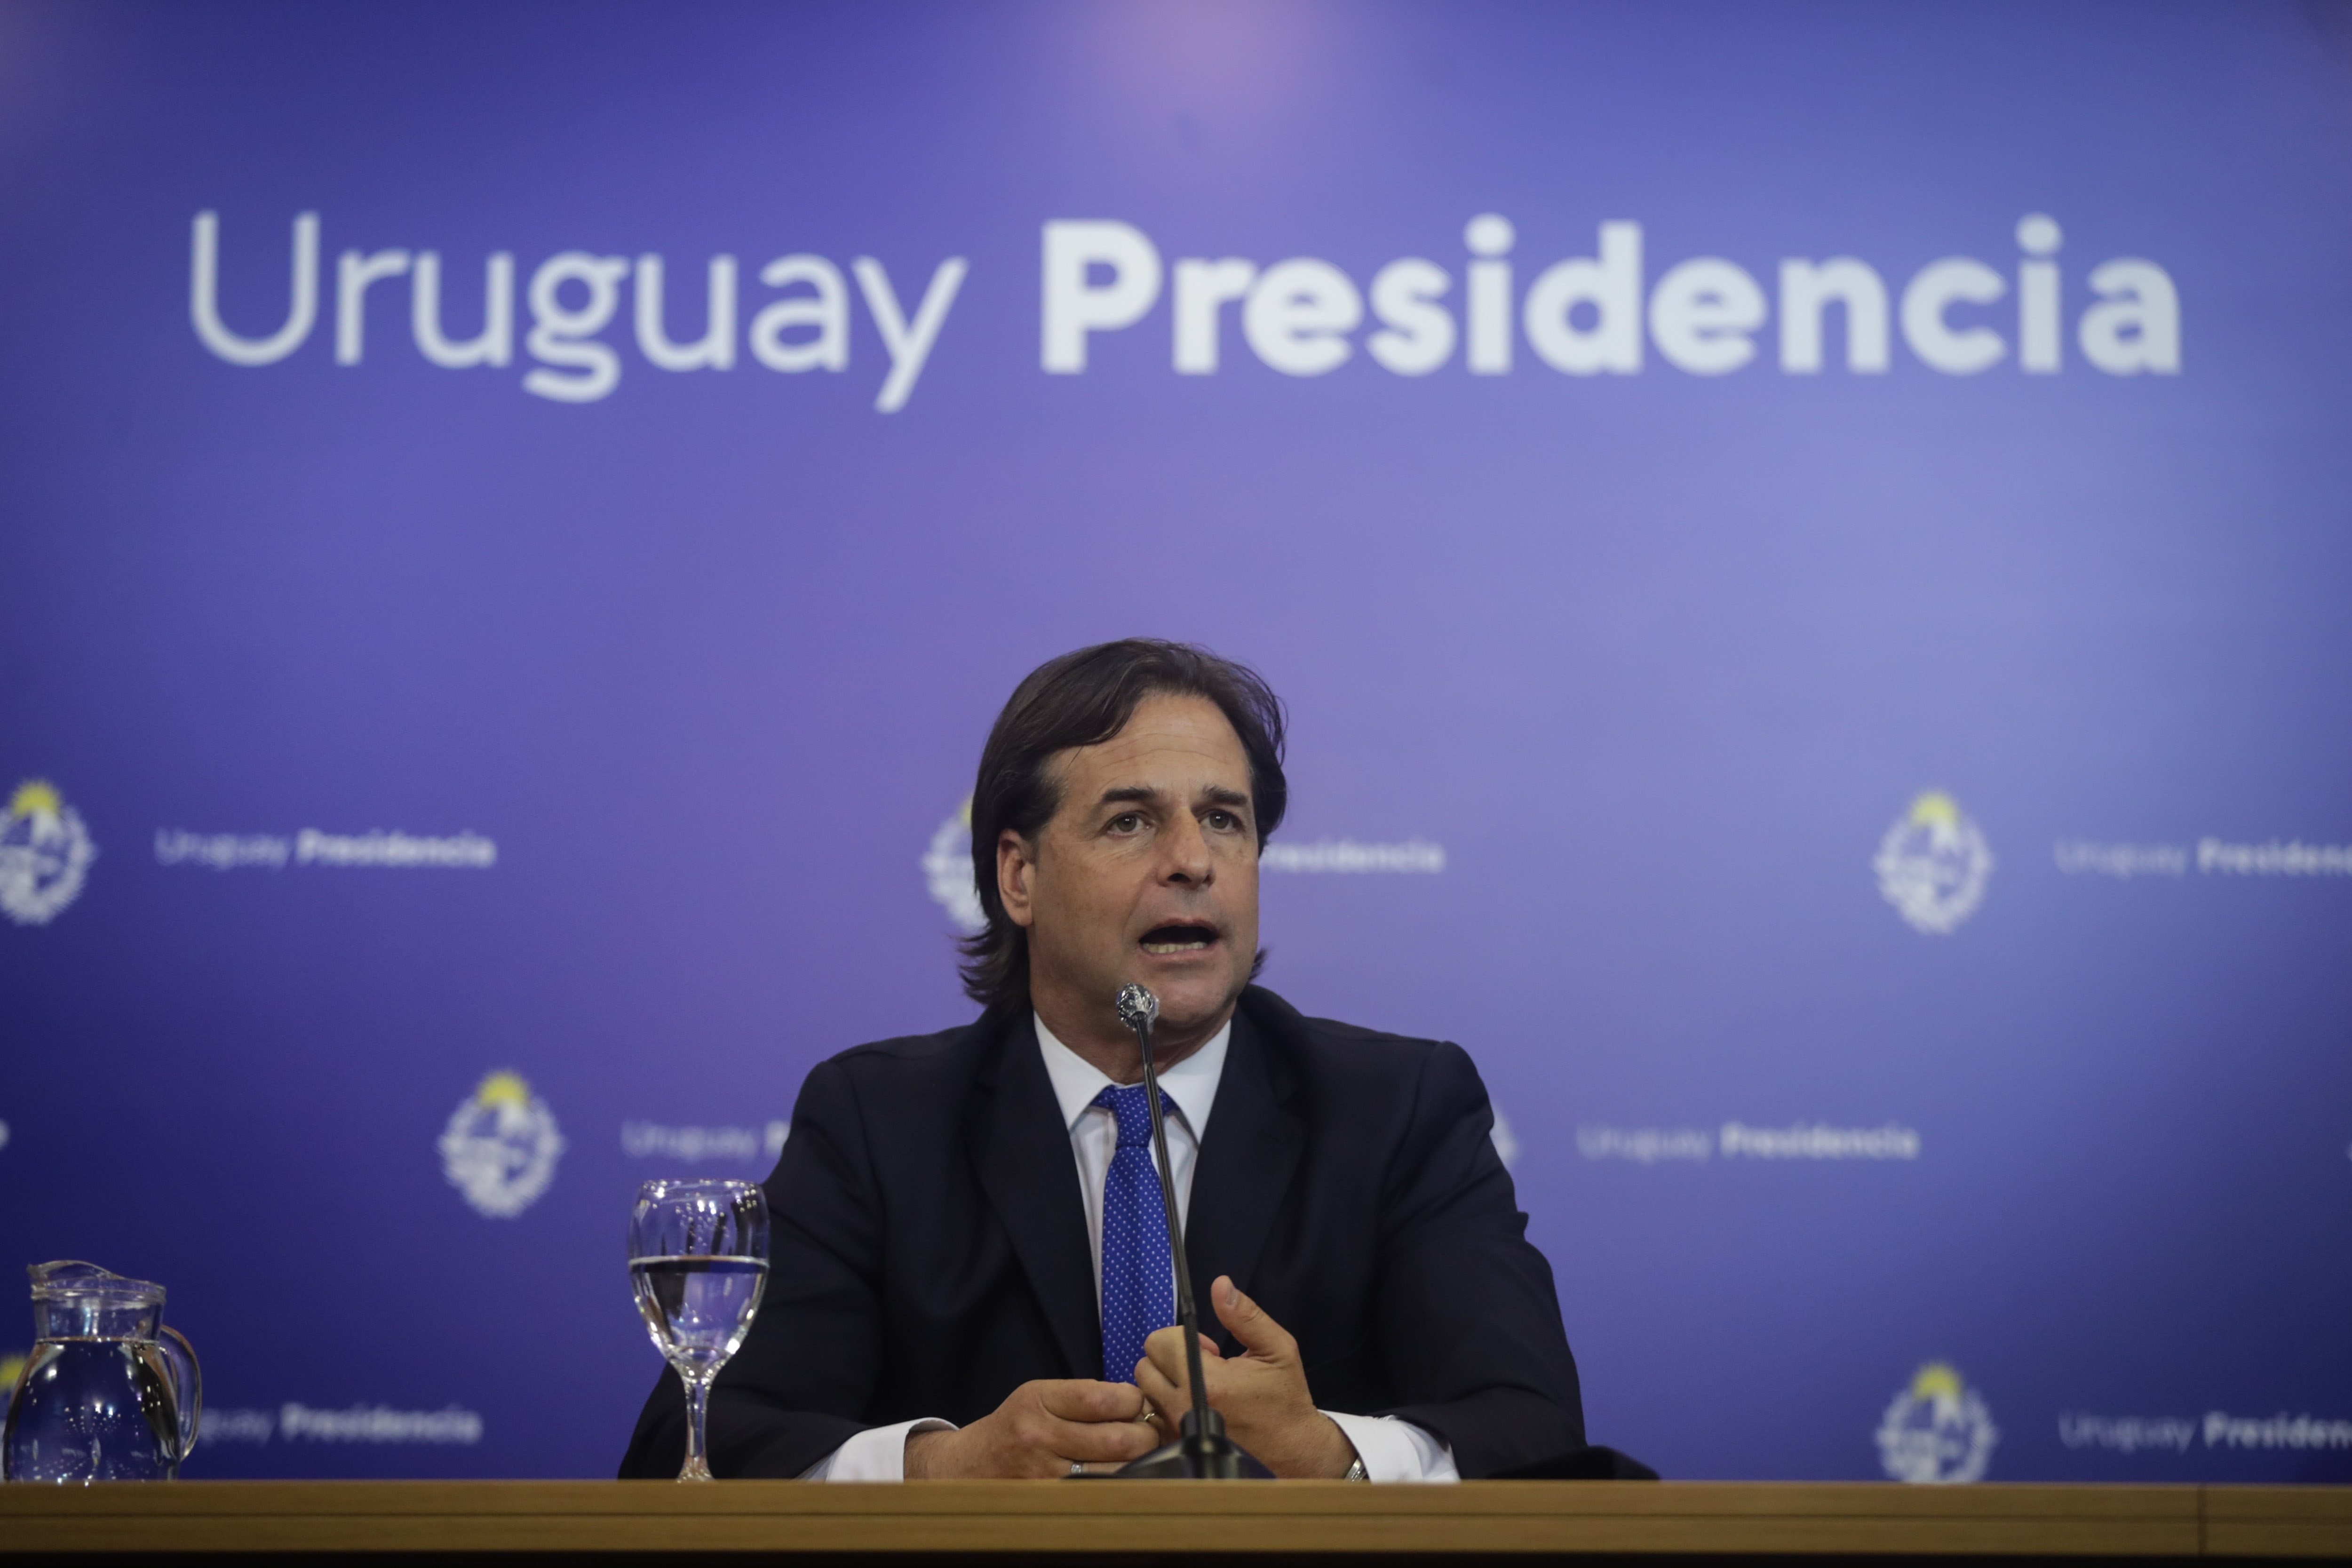 El presidente de Uruguay, Luis Lacalle Pou, anunció el fin de la emergencia sanitaria durante los primeros días de abril.
